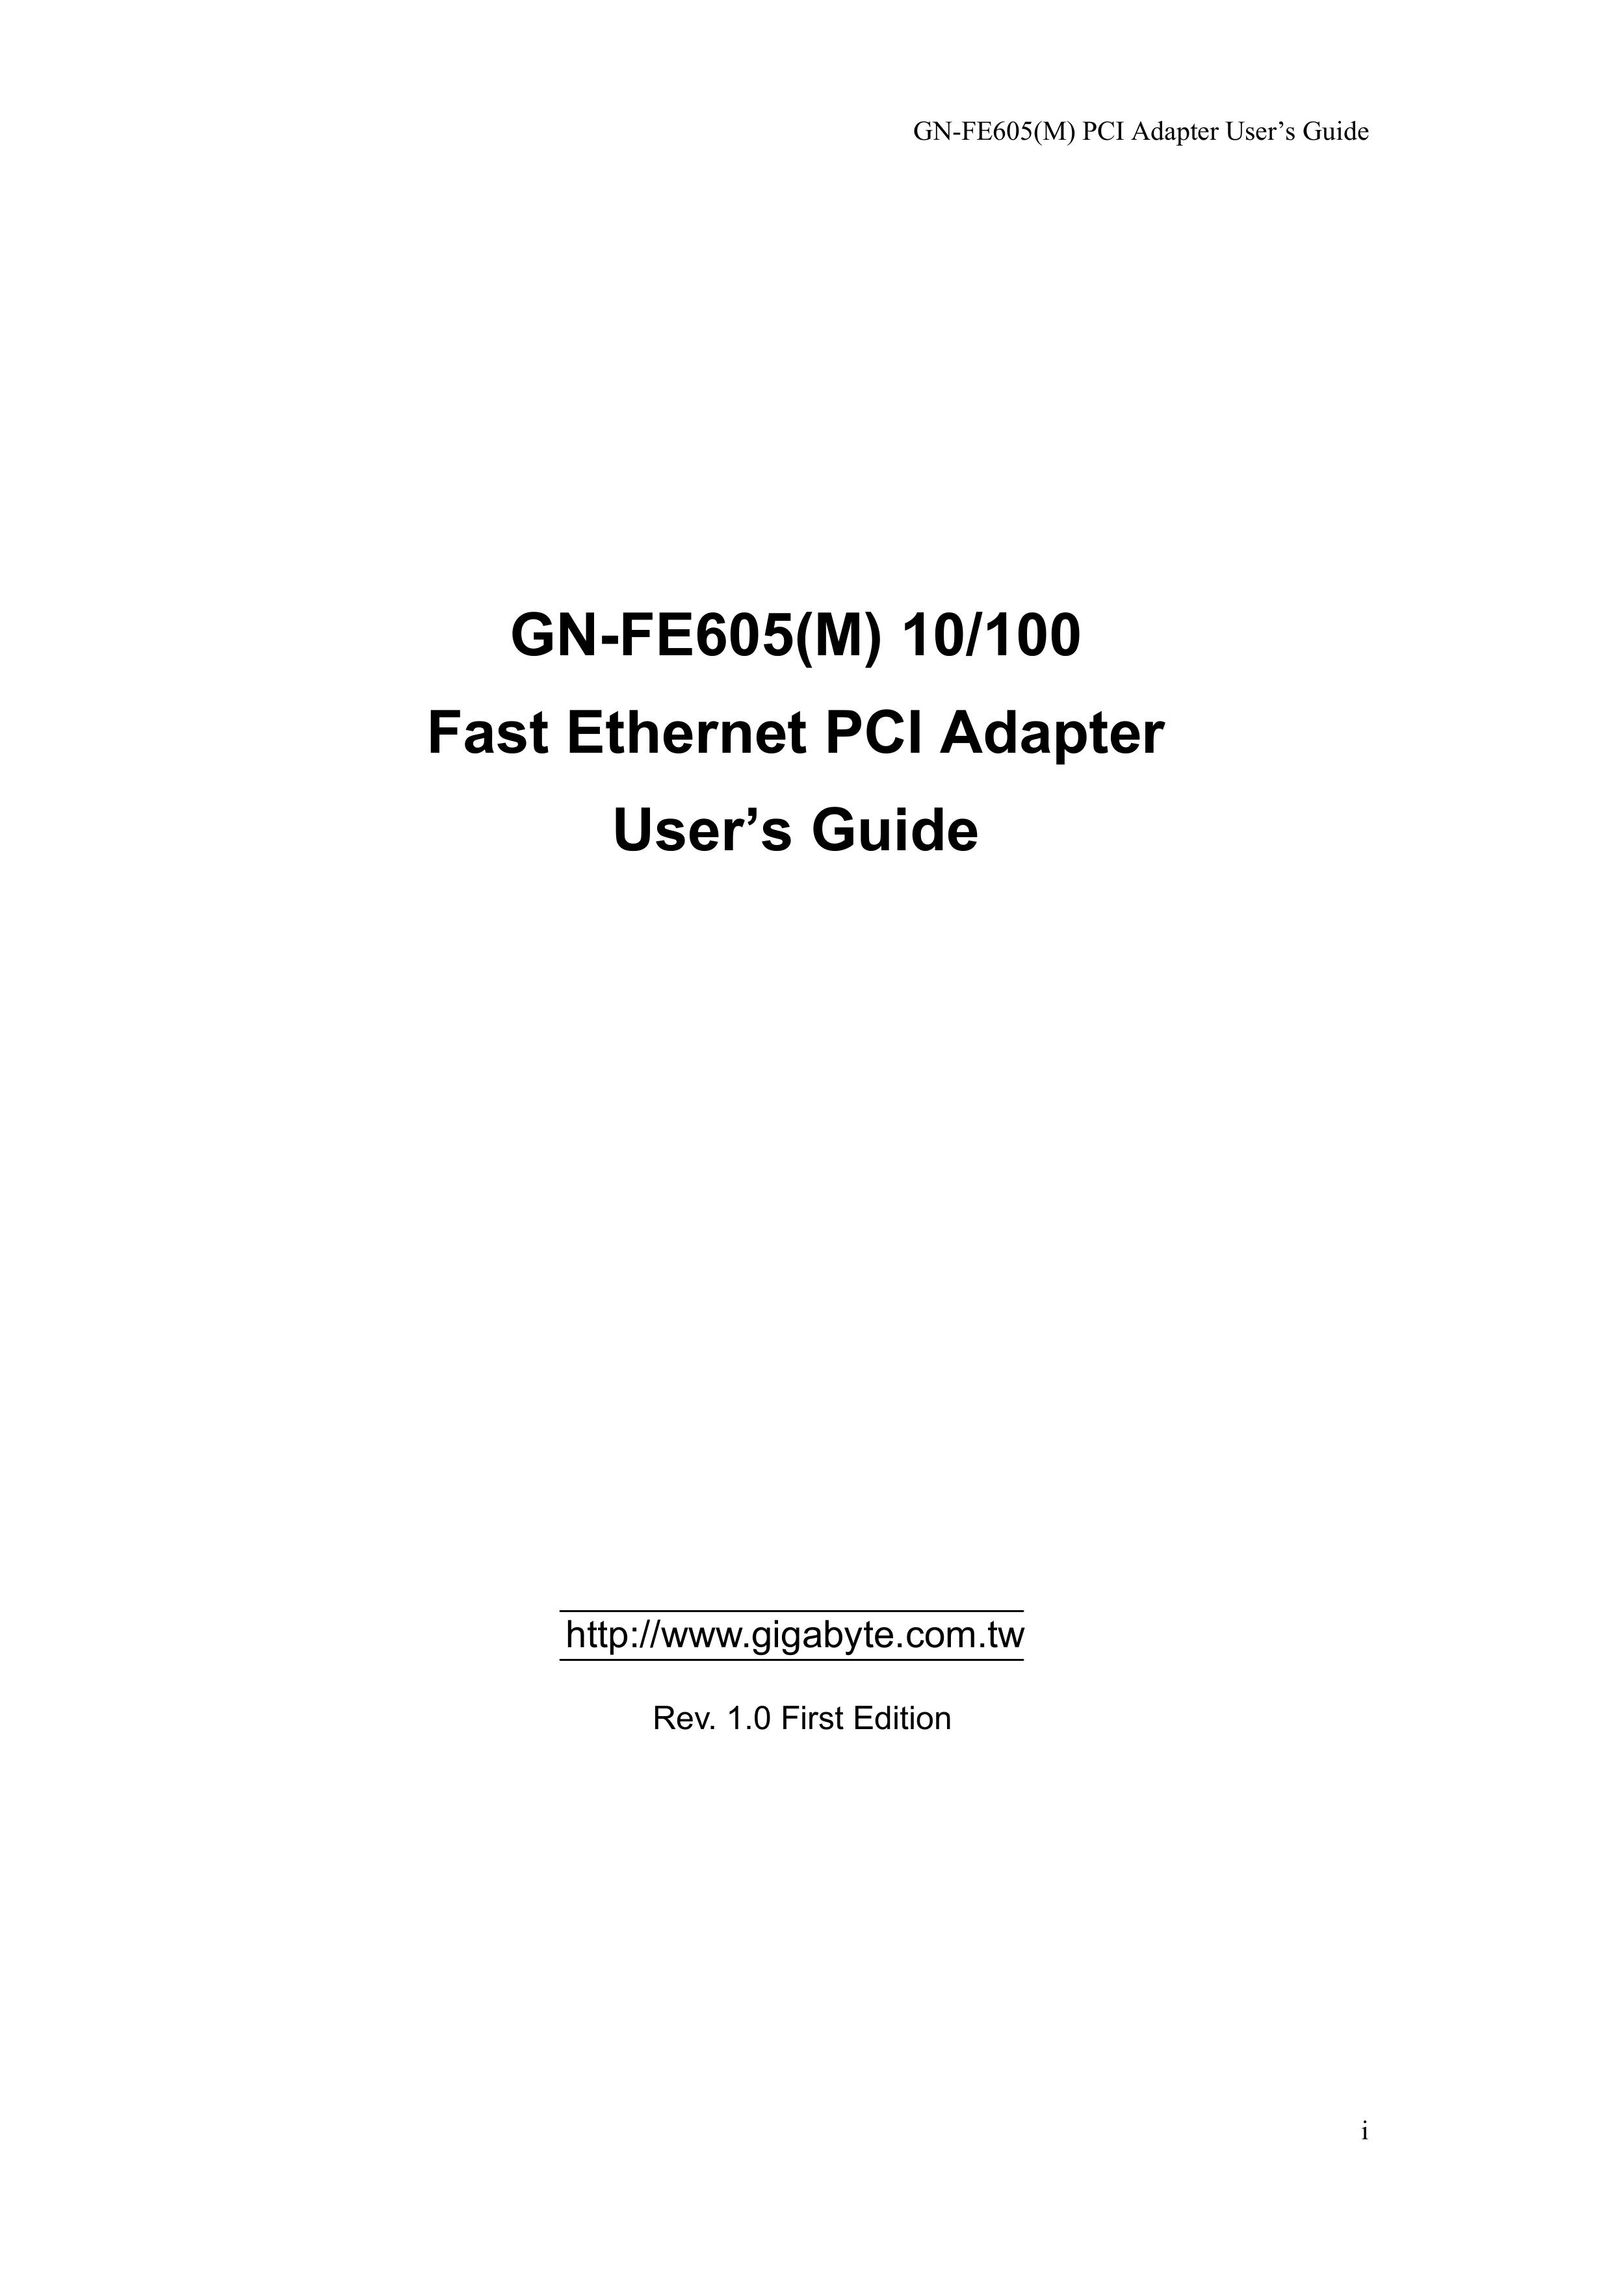 Gigabyte GN-FE605(M) Network Card User Manual